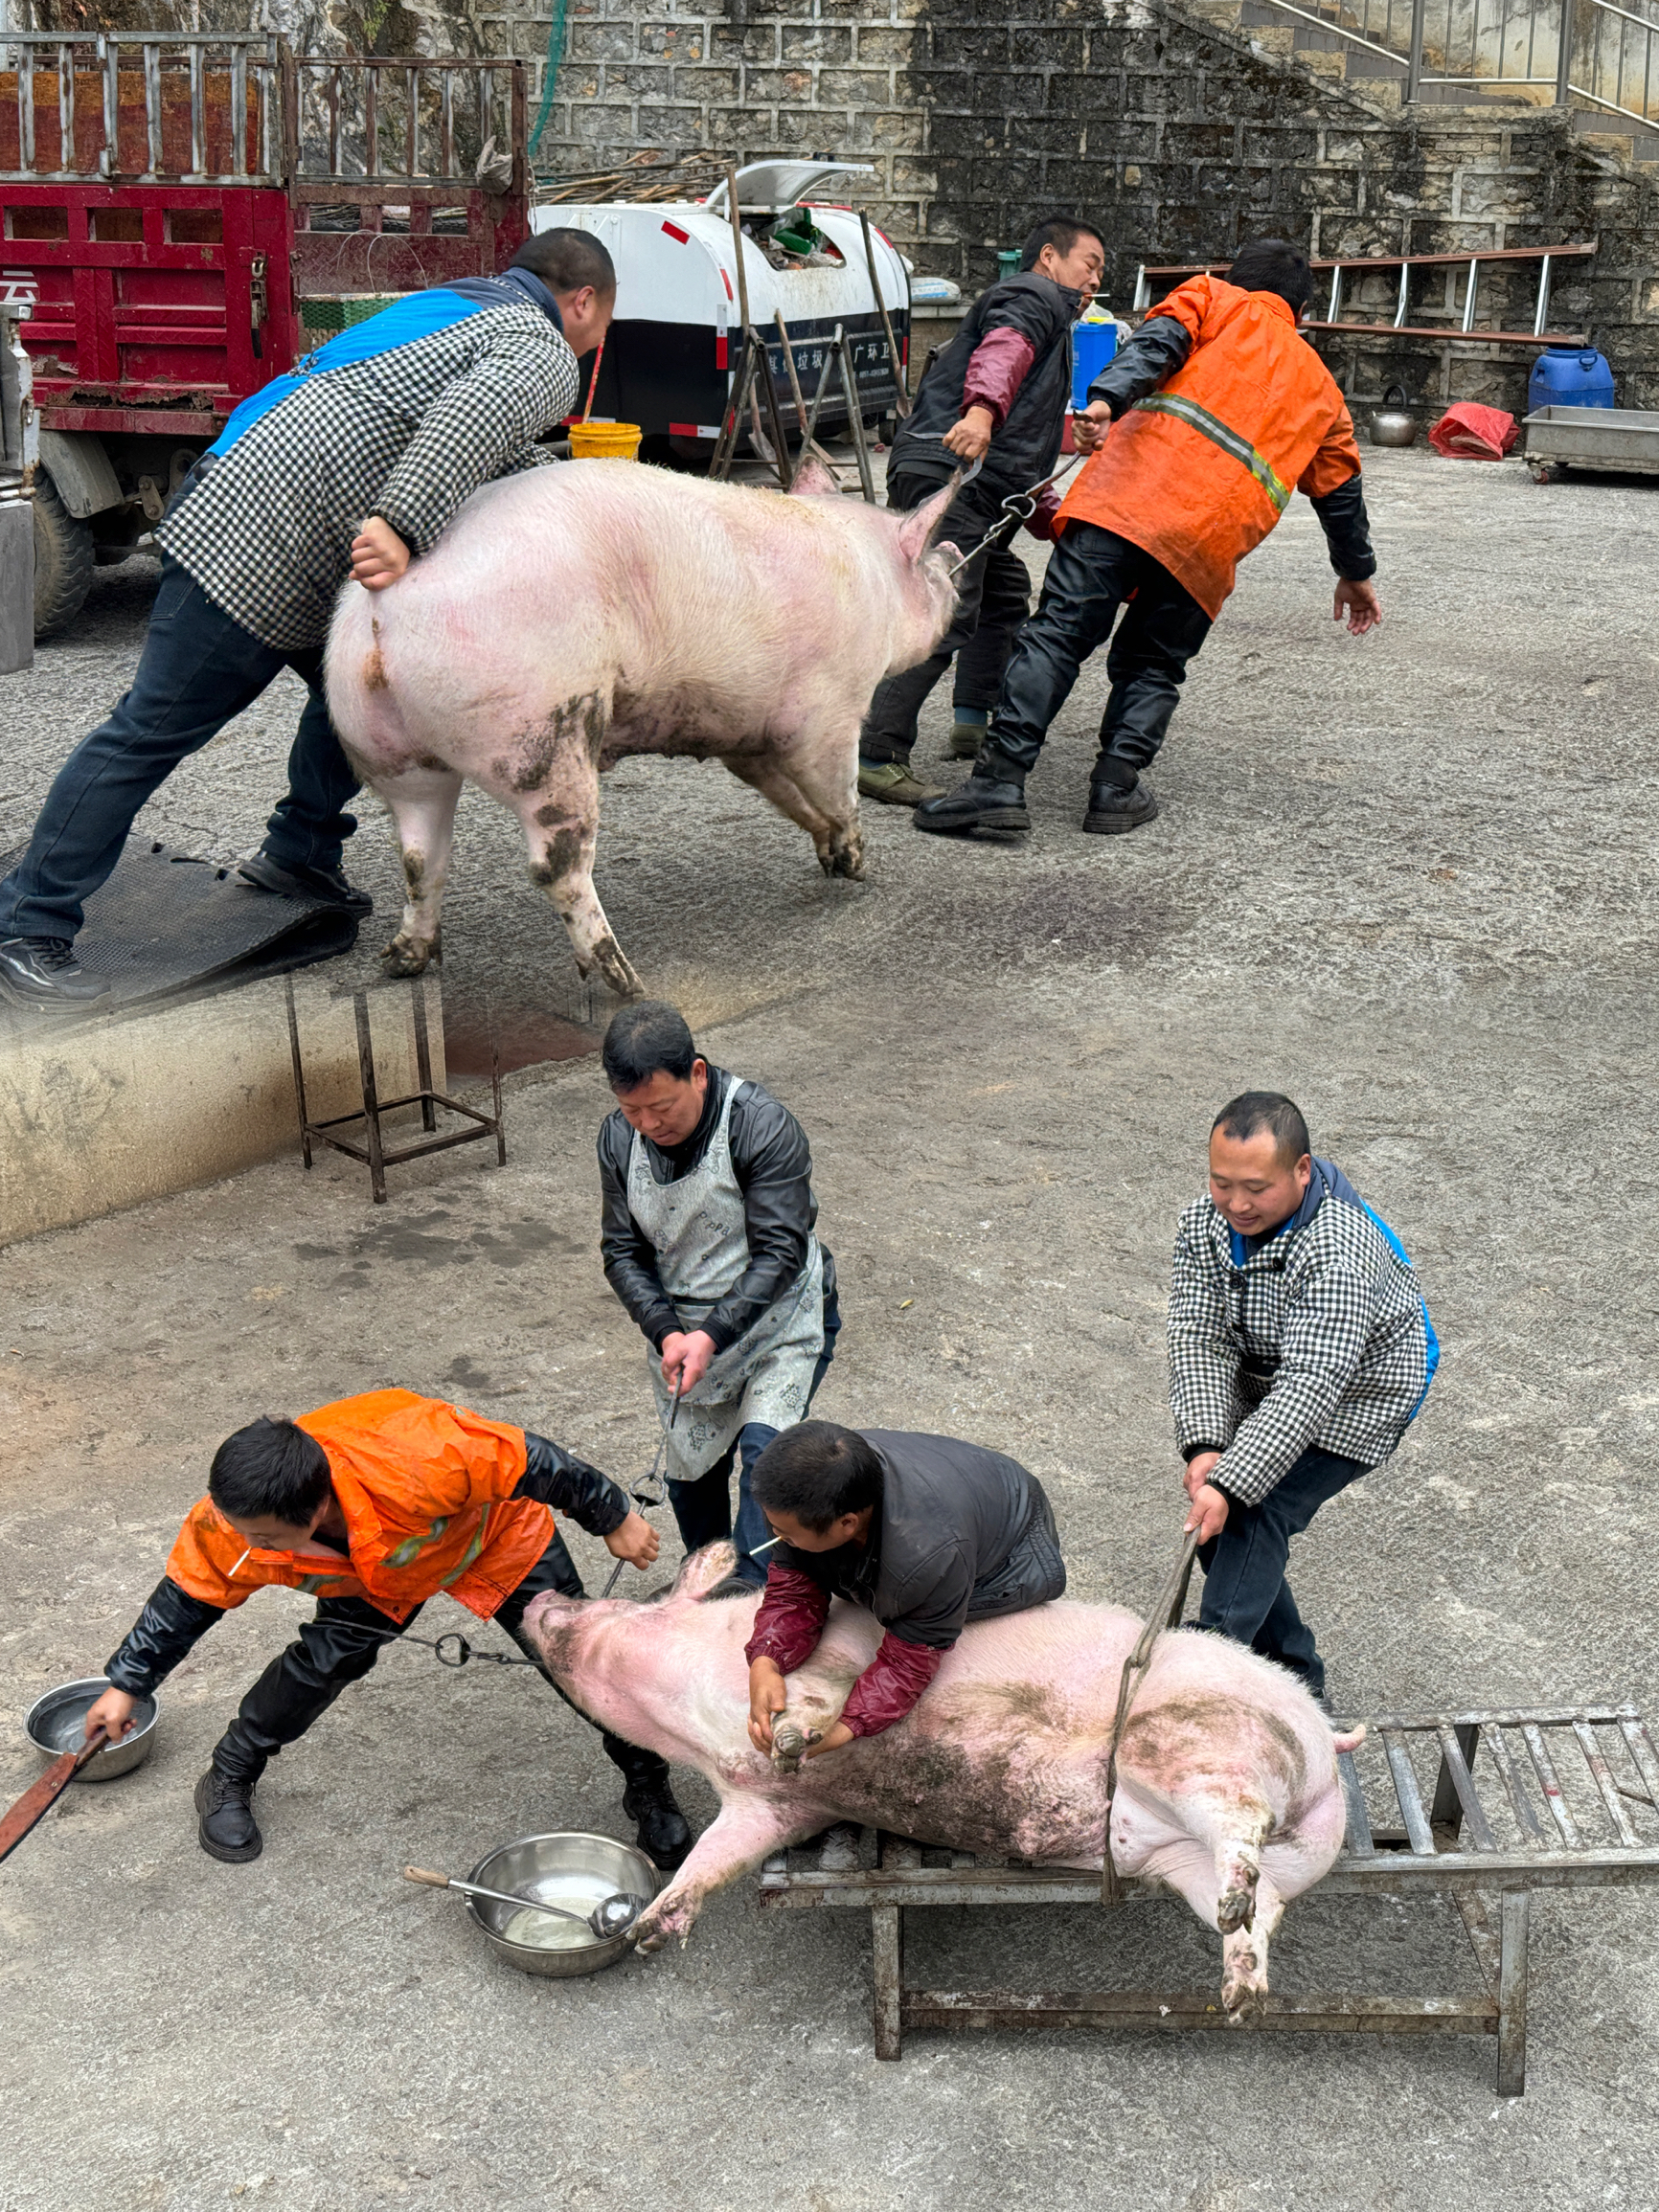 腊月到了， 贵州的杀猪饭 让人感受到浓浓的年味儿！ . 这顿饭不仅是庆祝杀猪的重大事件，更是拉近邻里